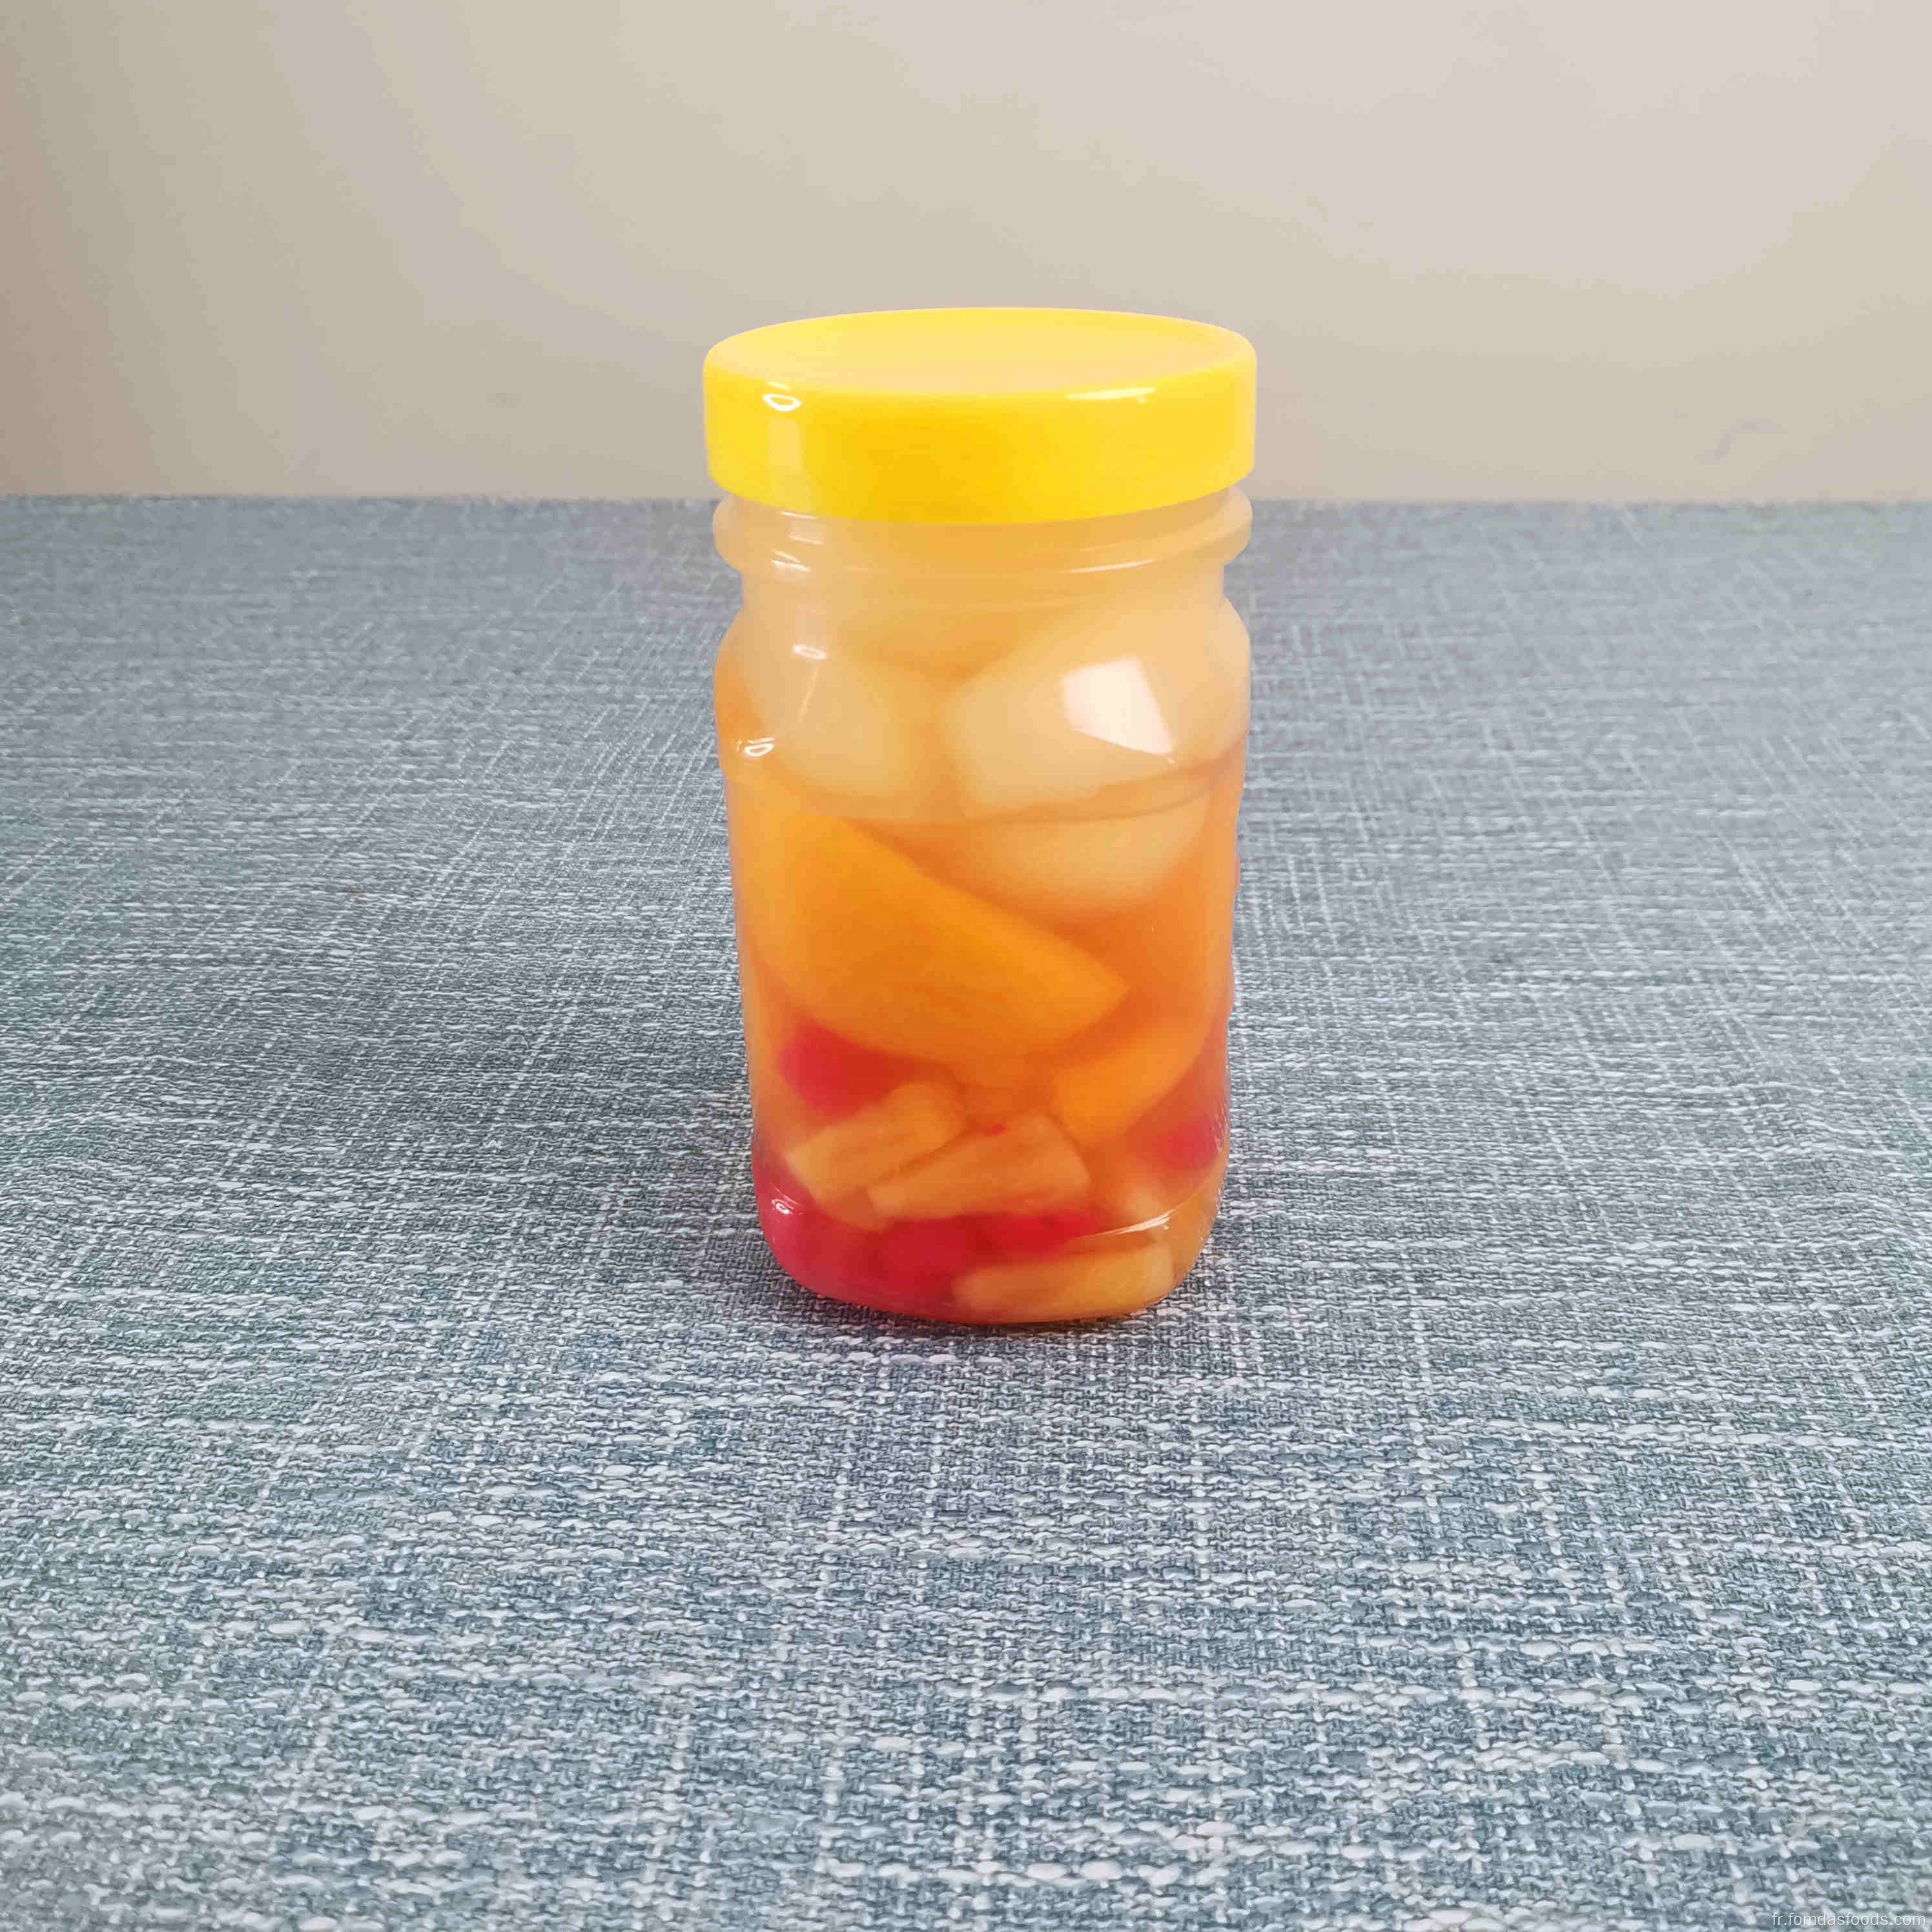 575g Cocktail de fruits dans le sirop dans le pot en plastique